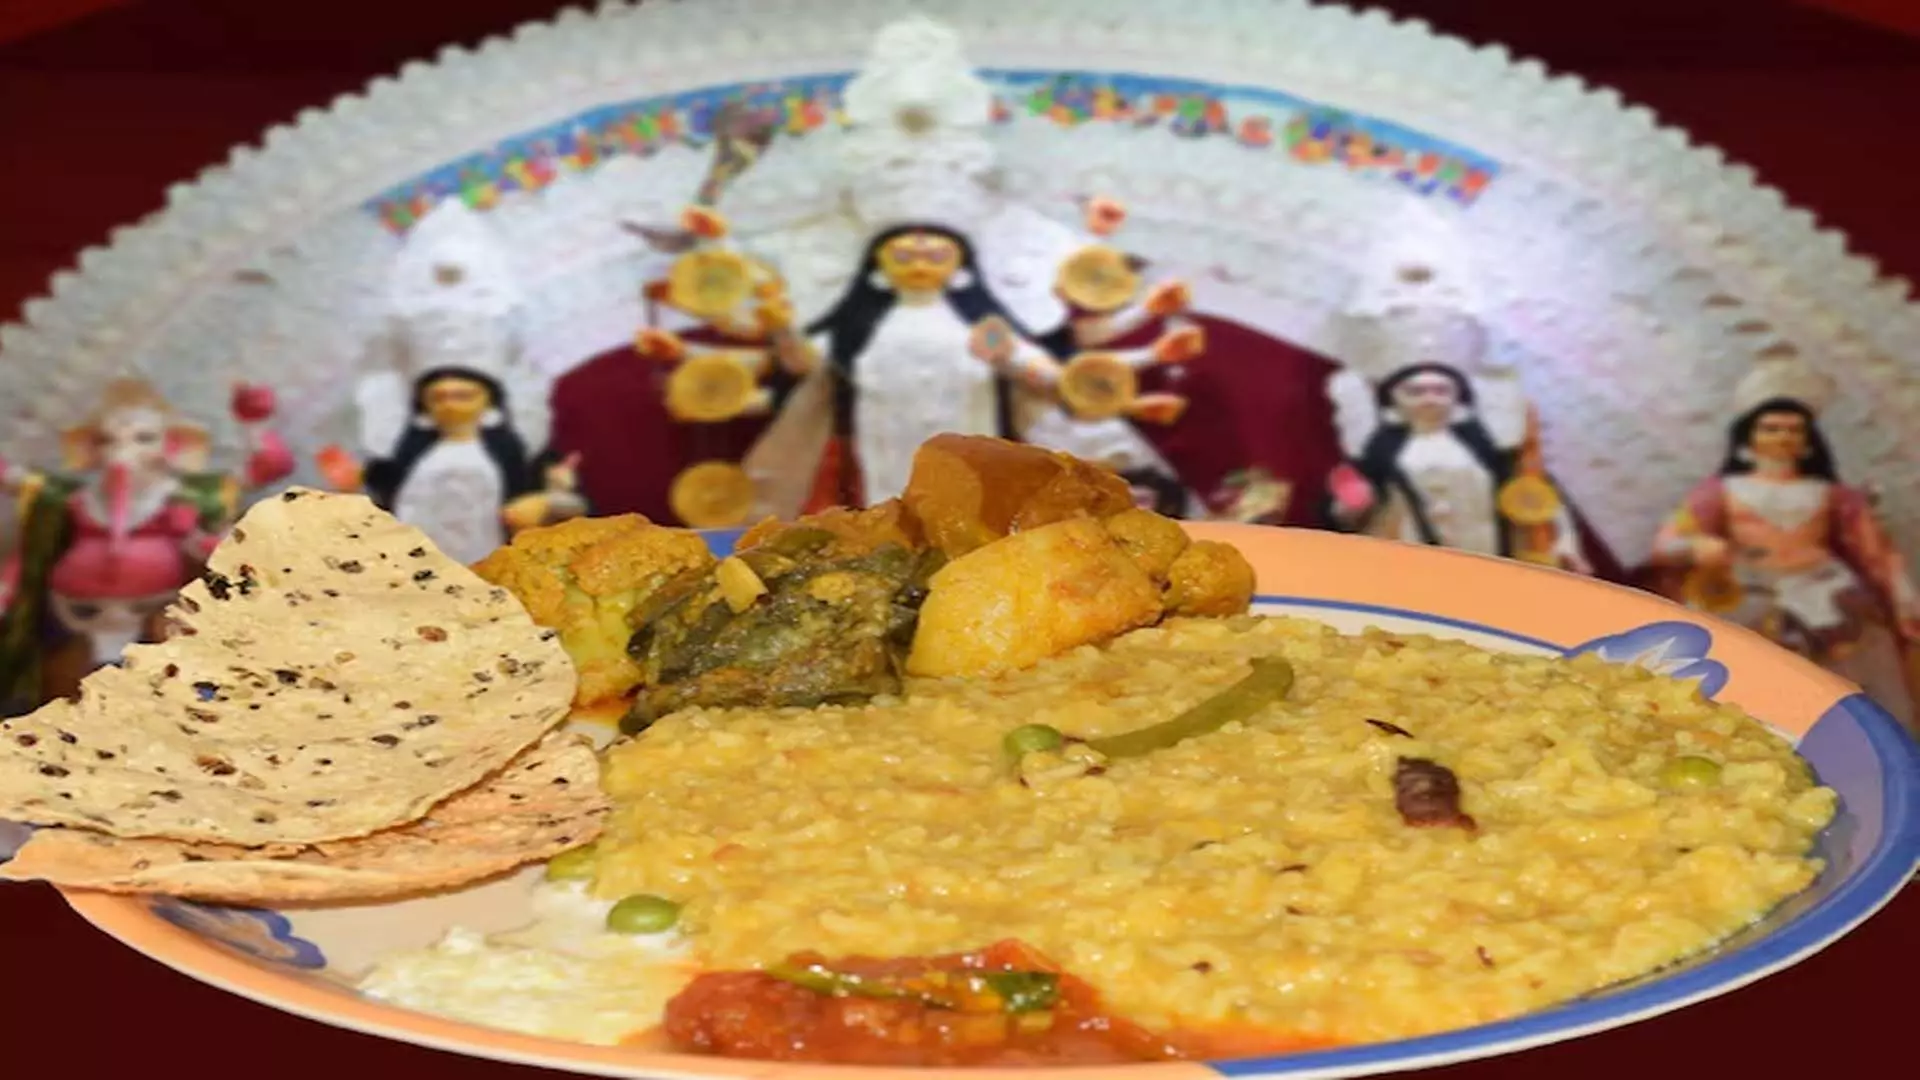 चैत्र नवरात्रि: 9 दिनों के उपवास के दौरान खाने योग्य खाद्य पदार्थ और परहेज